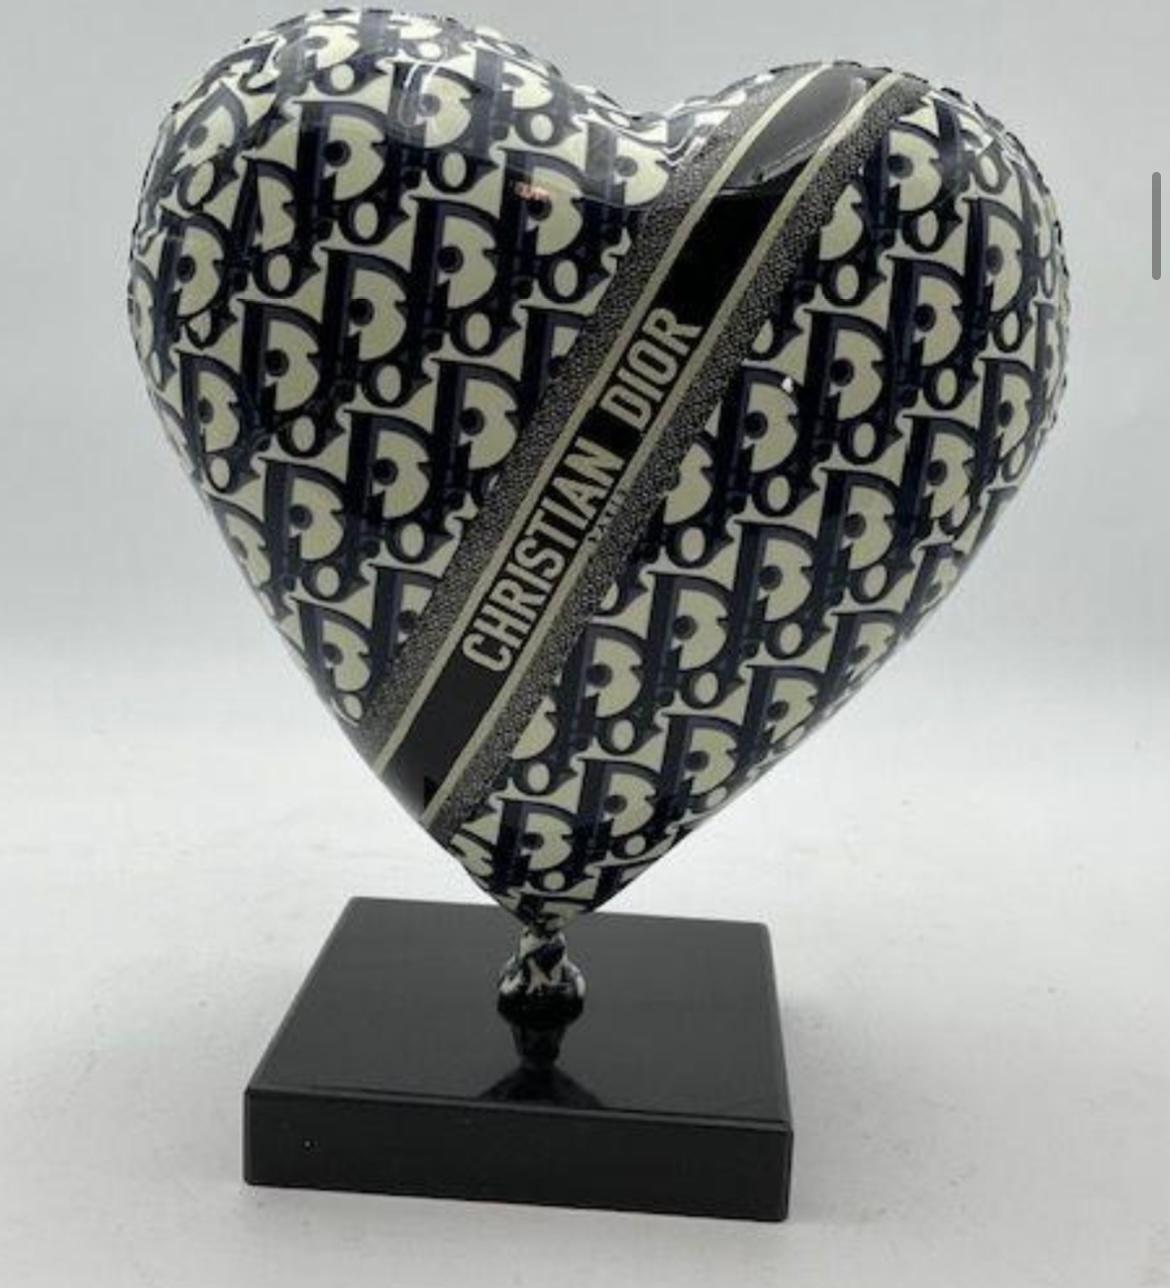 Naor Figurative Sculpture - 30cm Heart CD Tribute